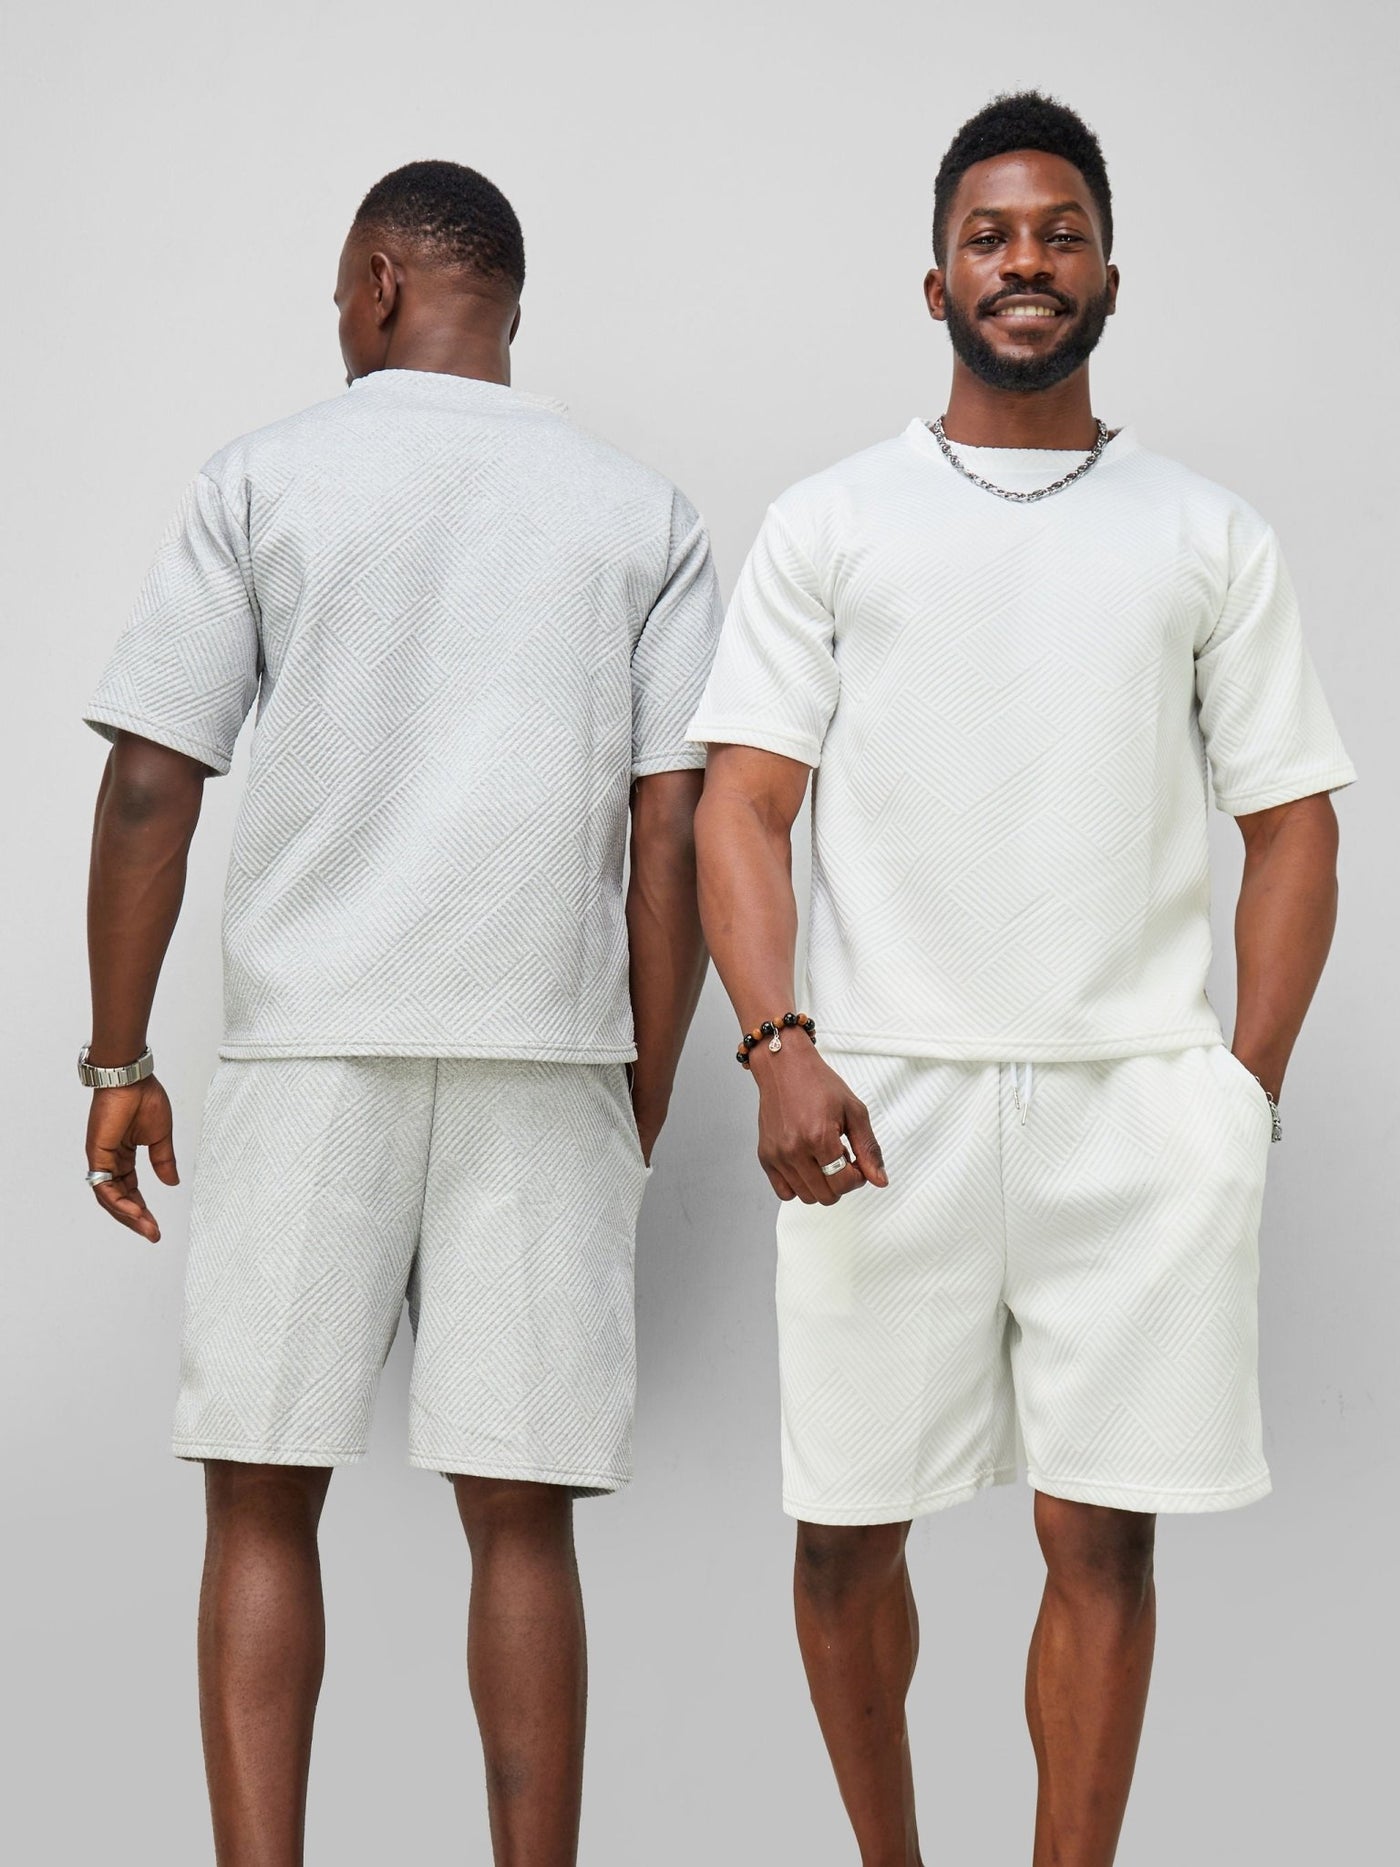 Zetu Men's Diagonal Lines Textured T-Shirt - Grey - Shopzetu